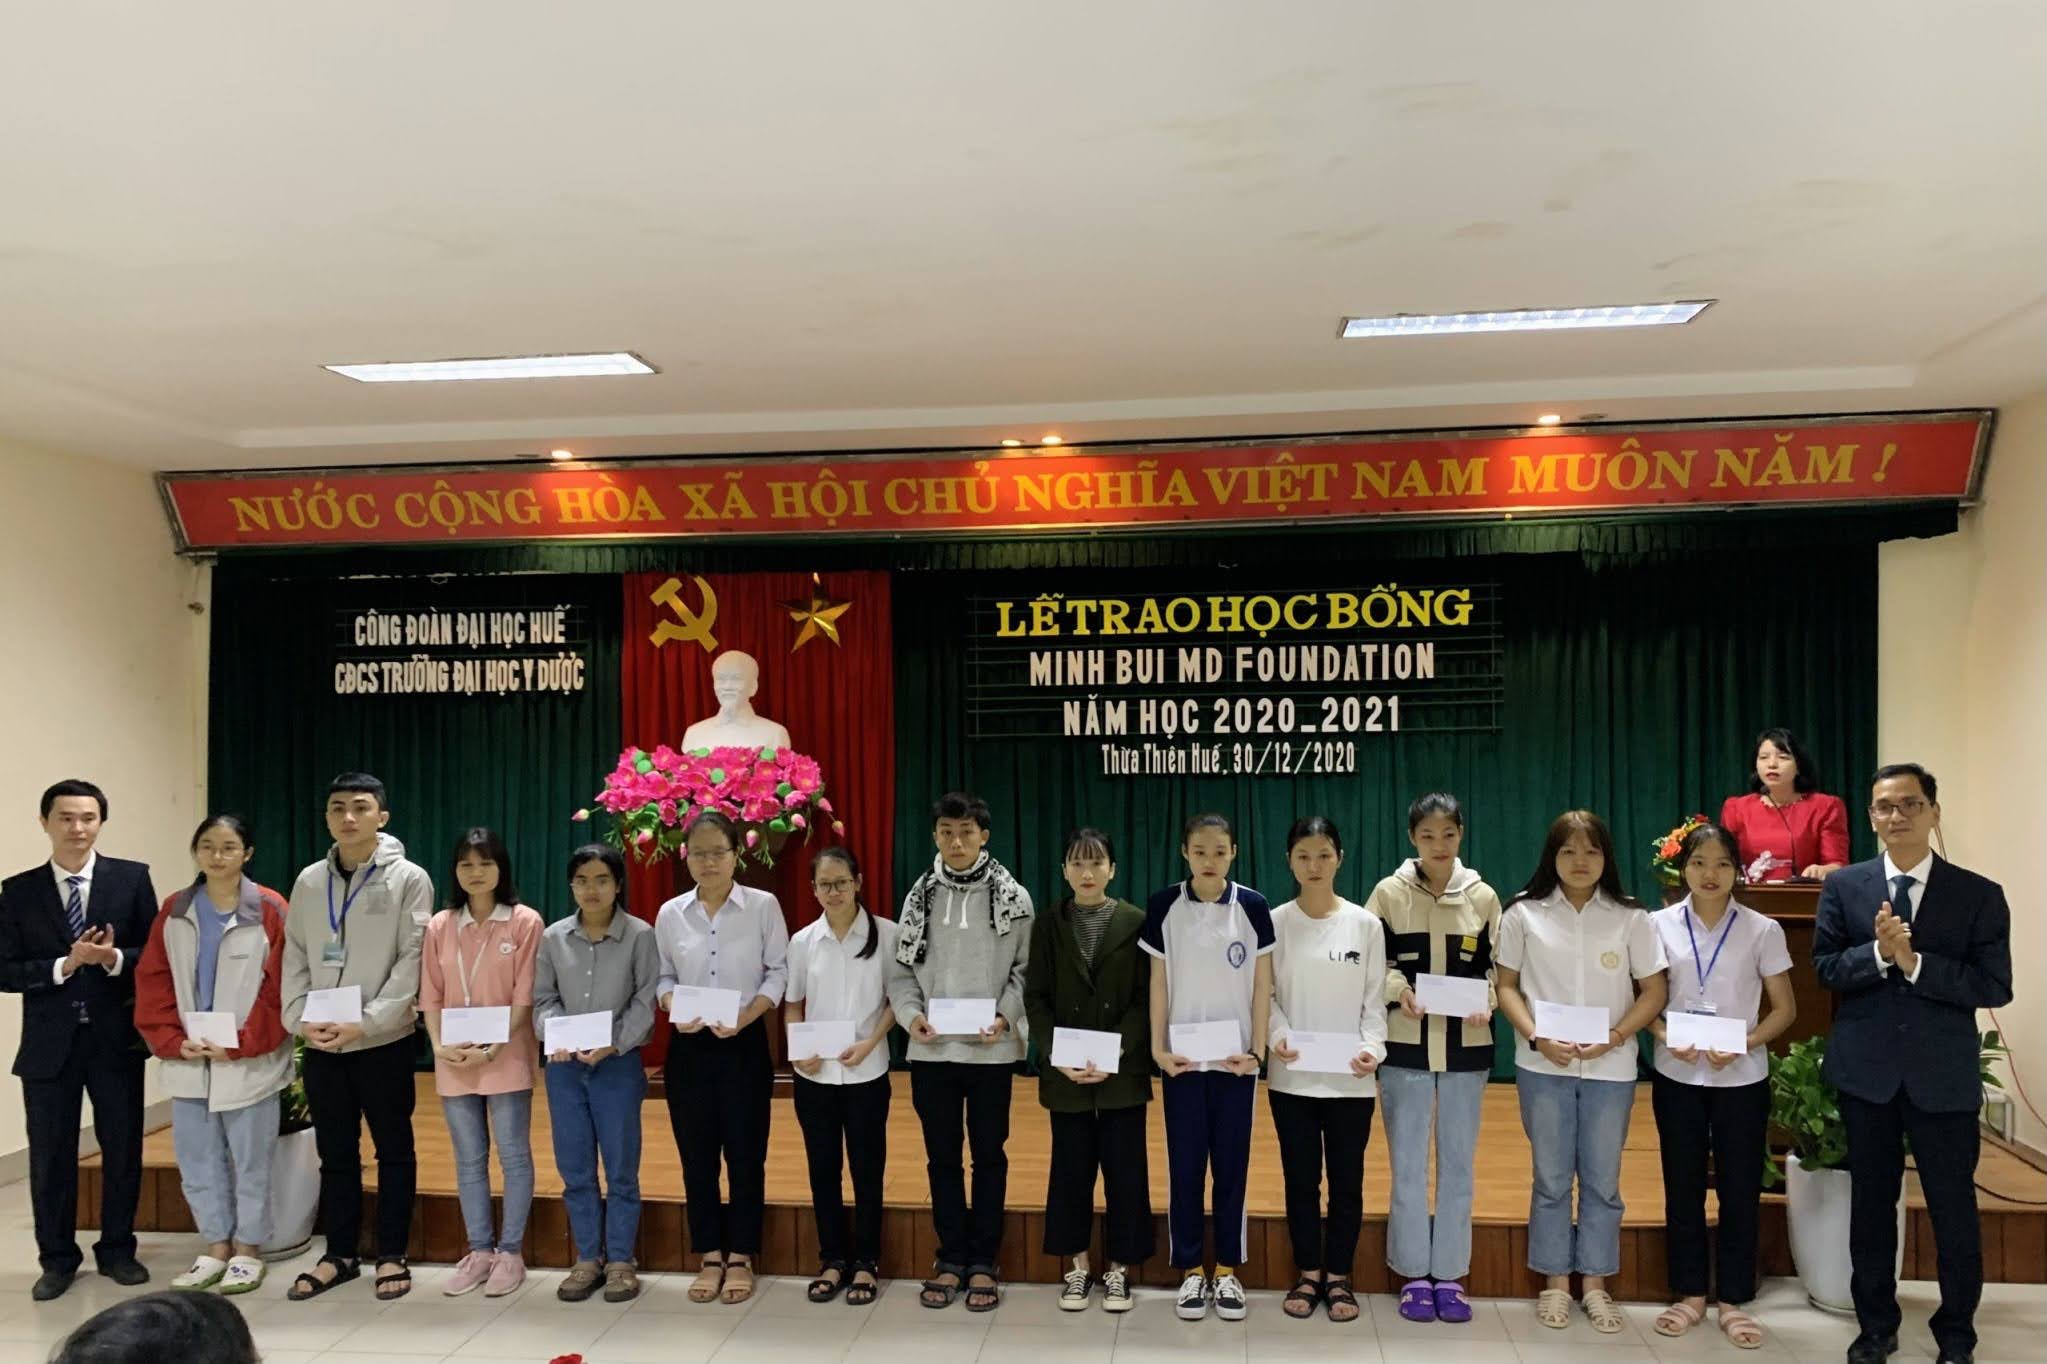 82 sinh viên được nhận học bổng Minh Bùi năm 2020